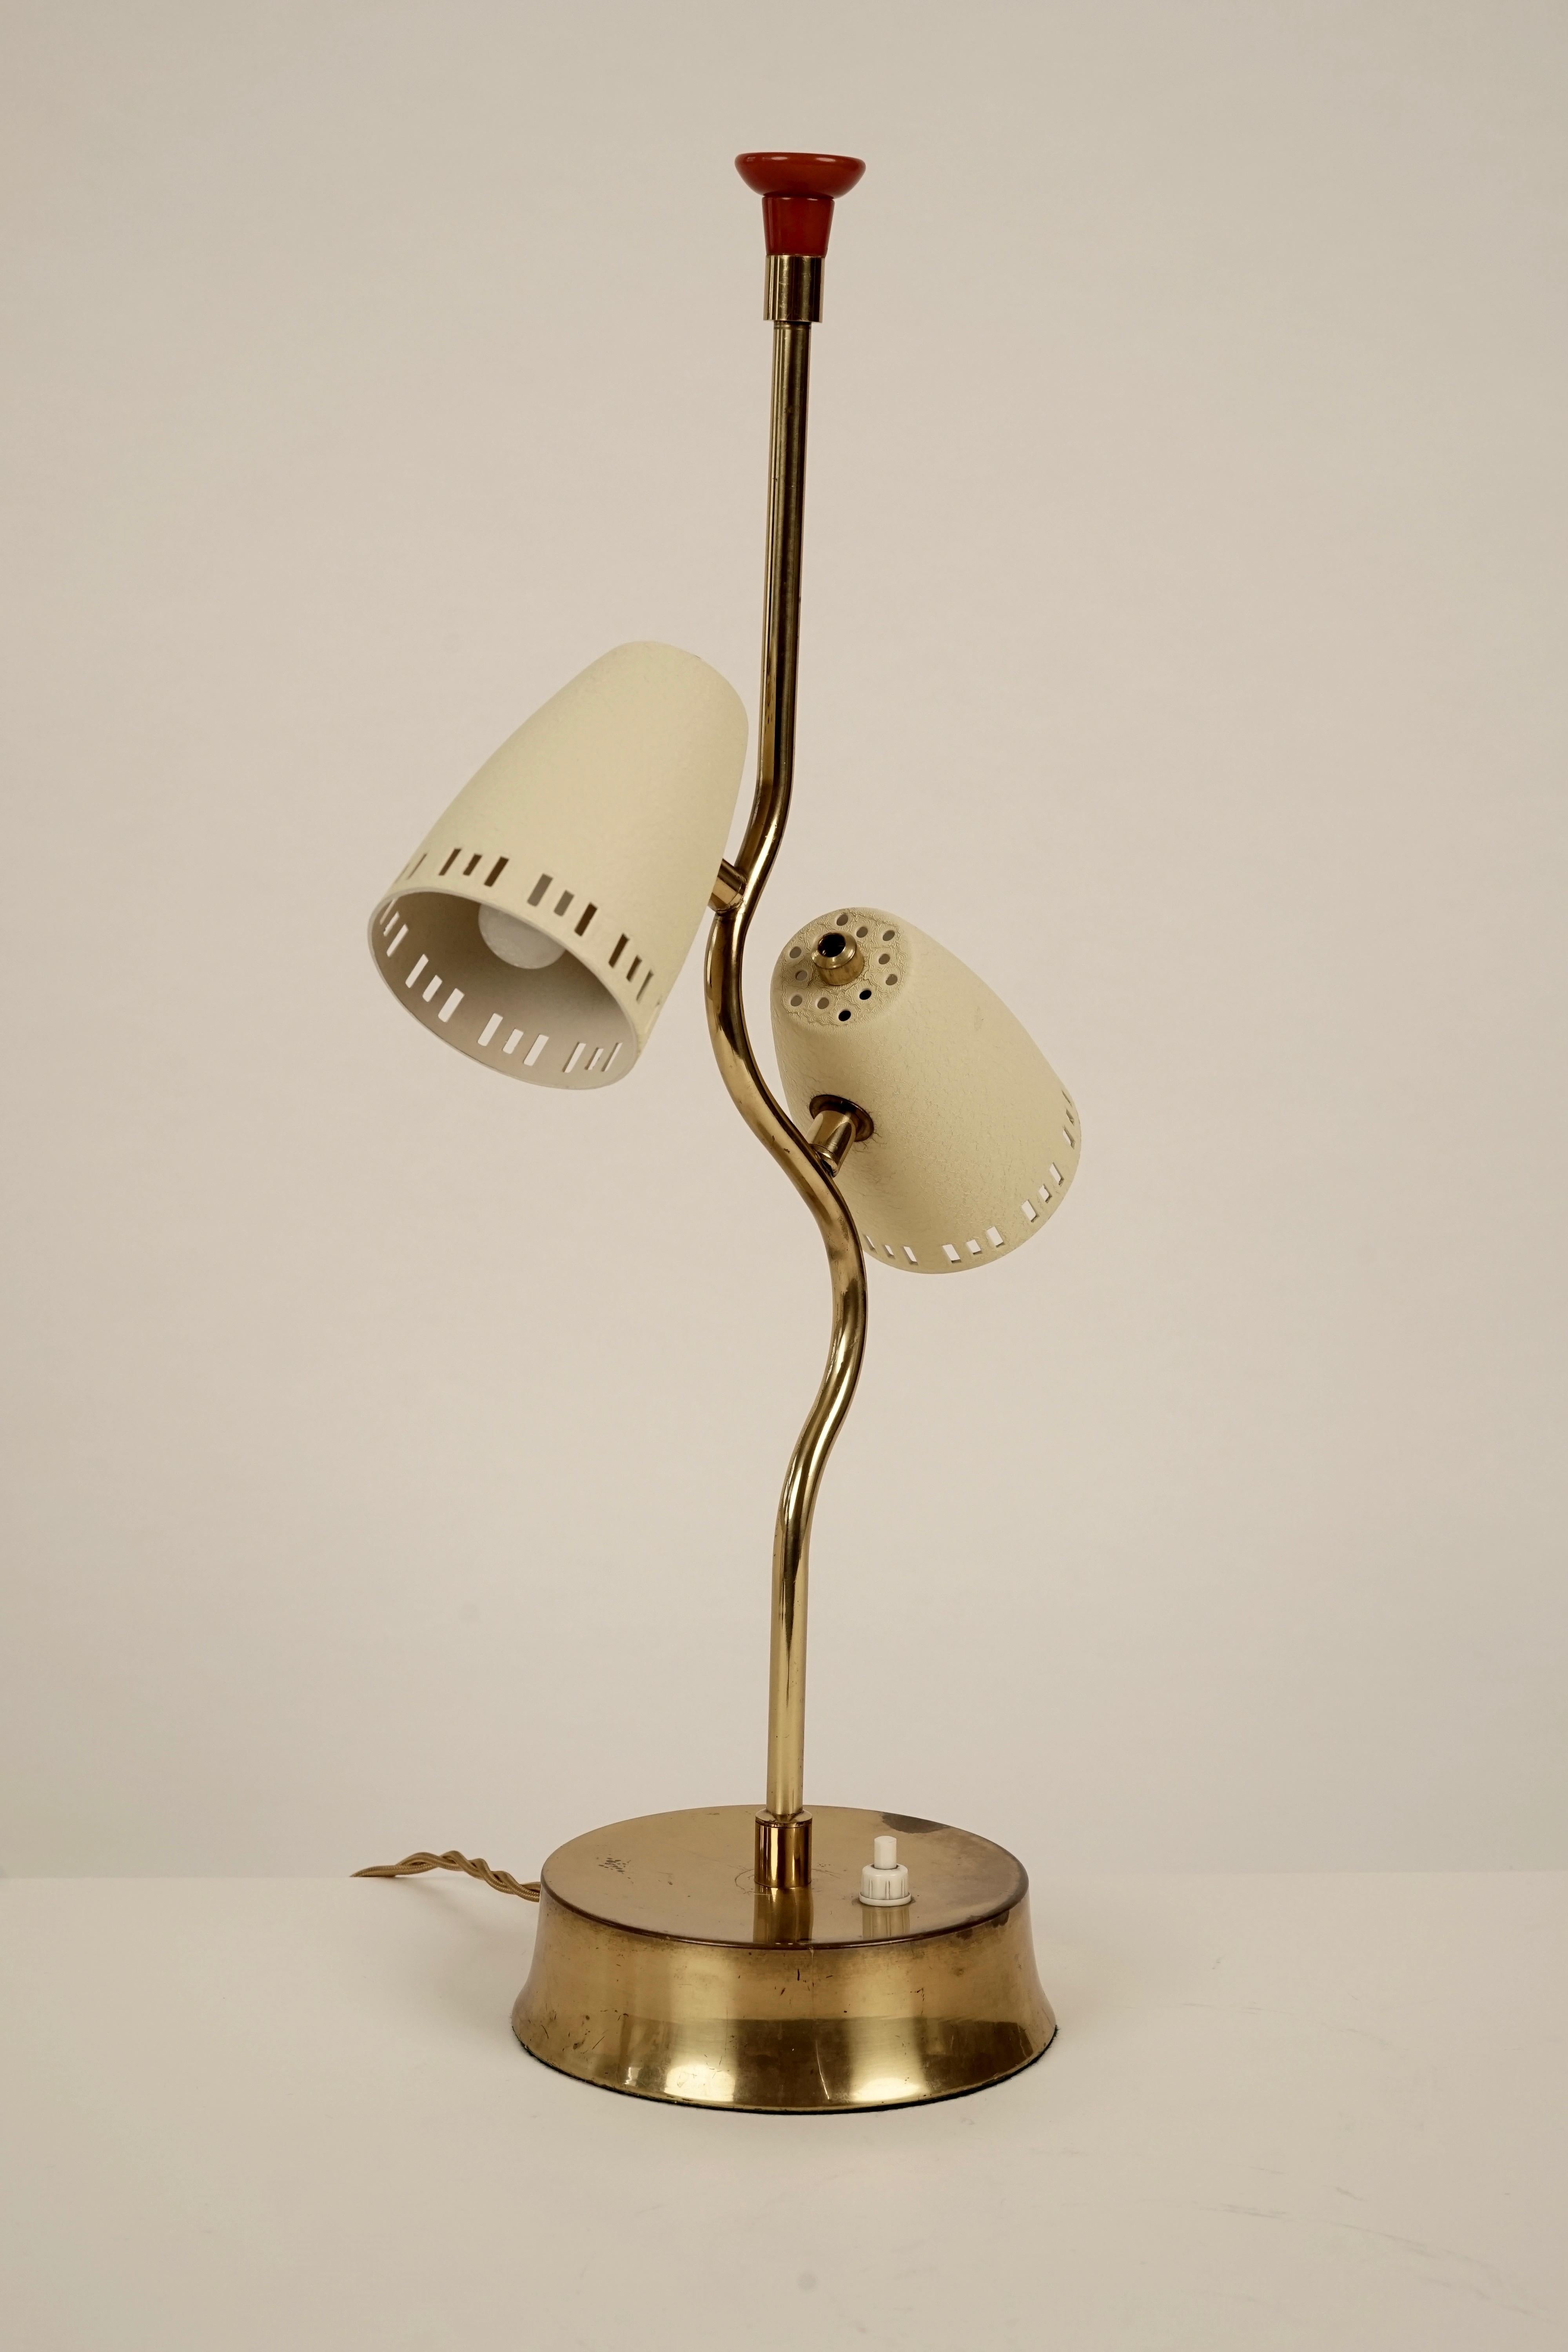 Cette lampe de table délicate et humoristique d'Autriche date des années 1950. Fabriqué en laiton avec des nuances de couleur blanc cassé et une poignée en bakélite rouge.
Il est livré avec un câble recouvert de tissu. Les ombres ne tournent pas.